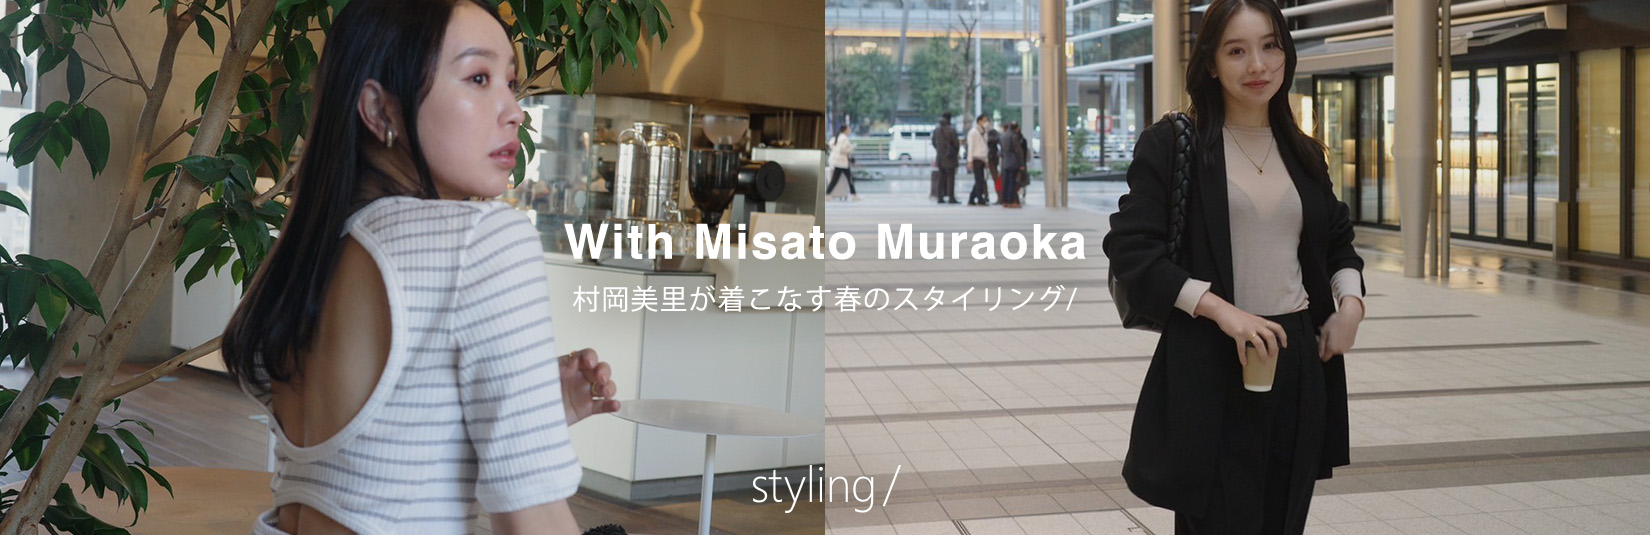 「スタイリング/＜styling/＞」村岡美里が着こなす春のスタイリング/ With Misato Muraoka